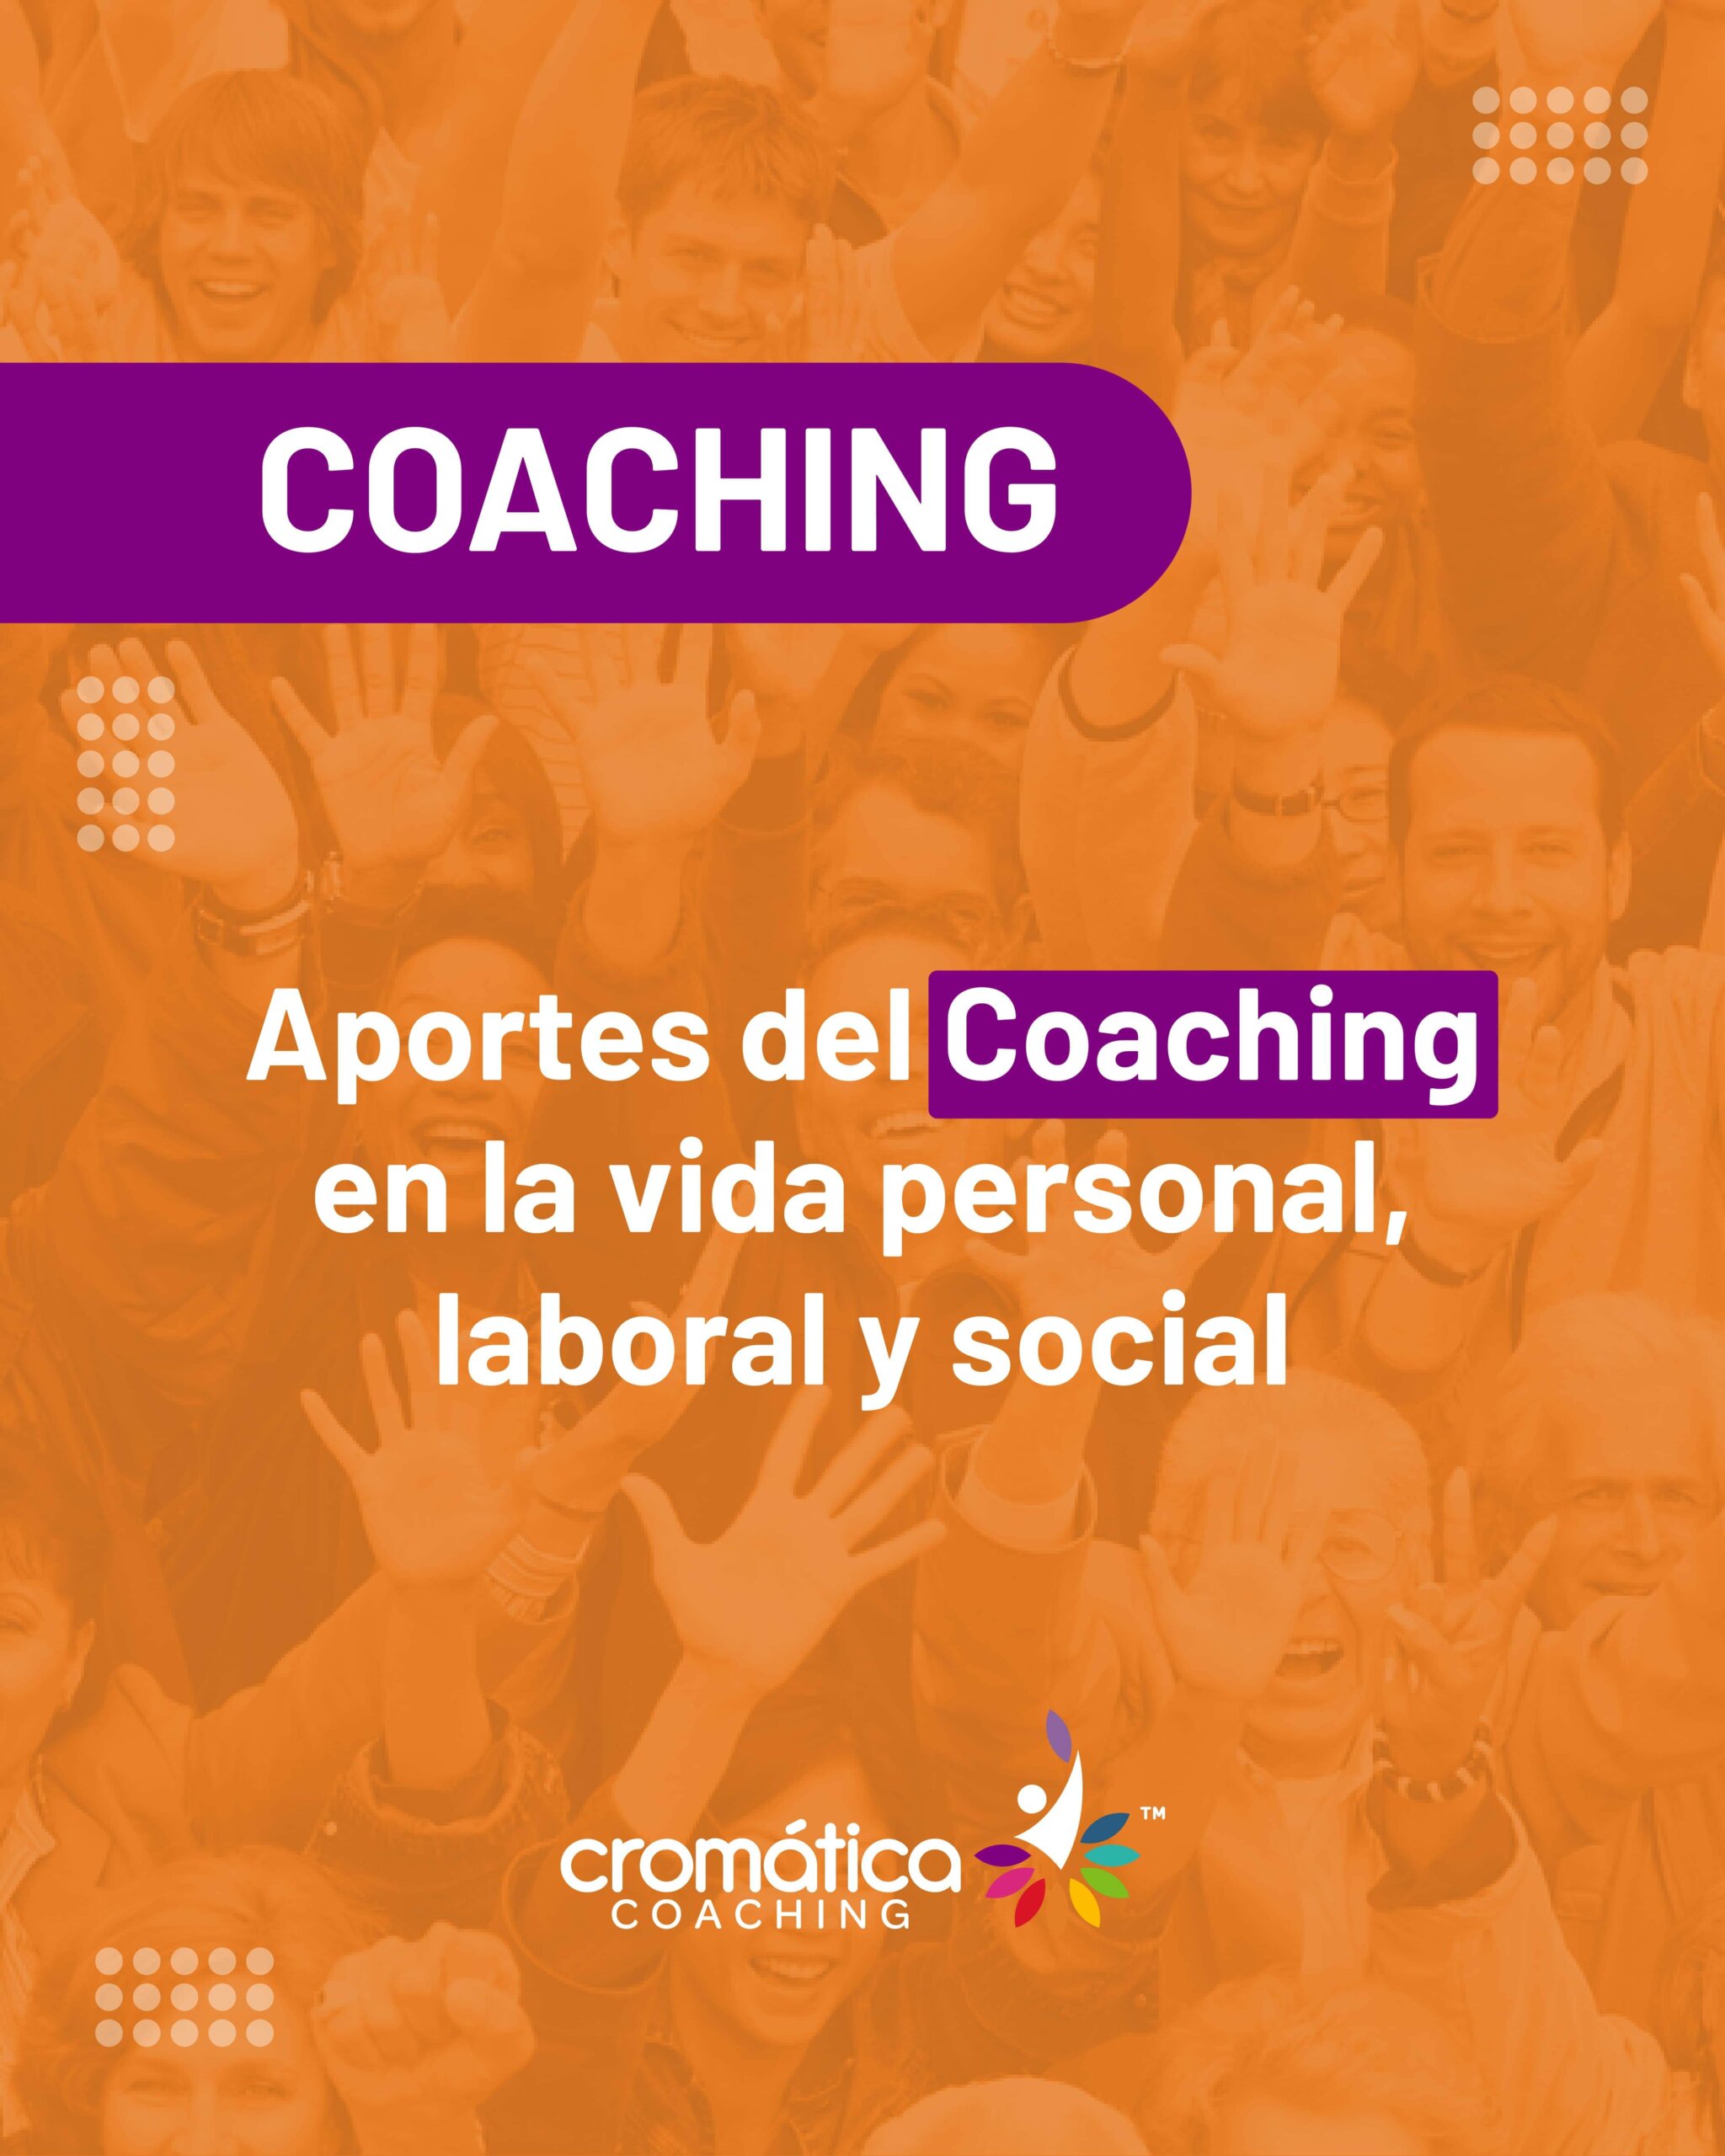 Aportes-del-Coaching-en-la-vida-persona-laboral-y-social-Cromatica-Coaching-4